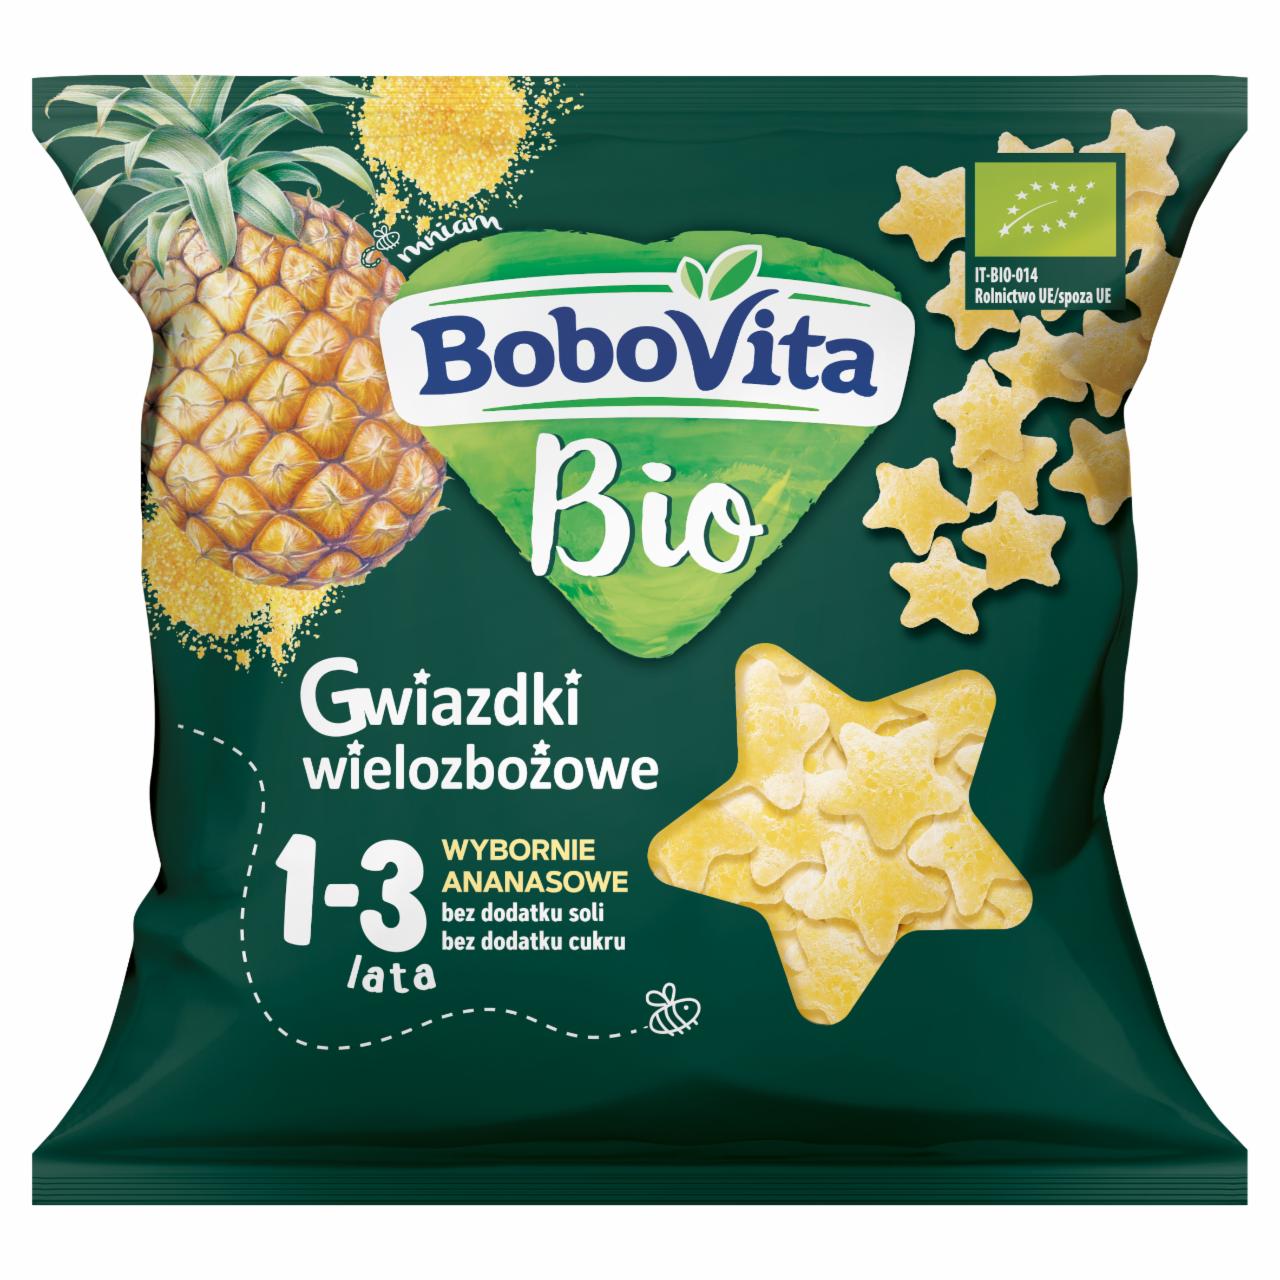 Zdjęcia - BoboVita Bio Gwiazdki wielozbożowe wybornie ananasowe 1-3 lata 20 g